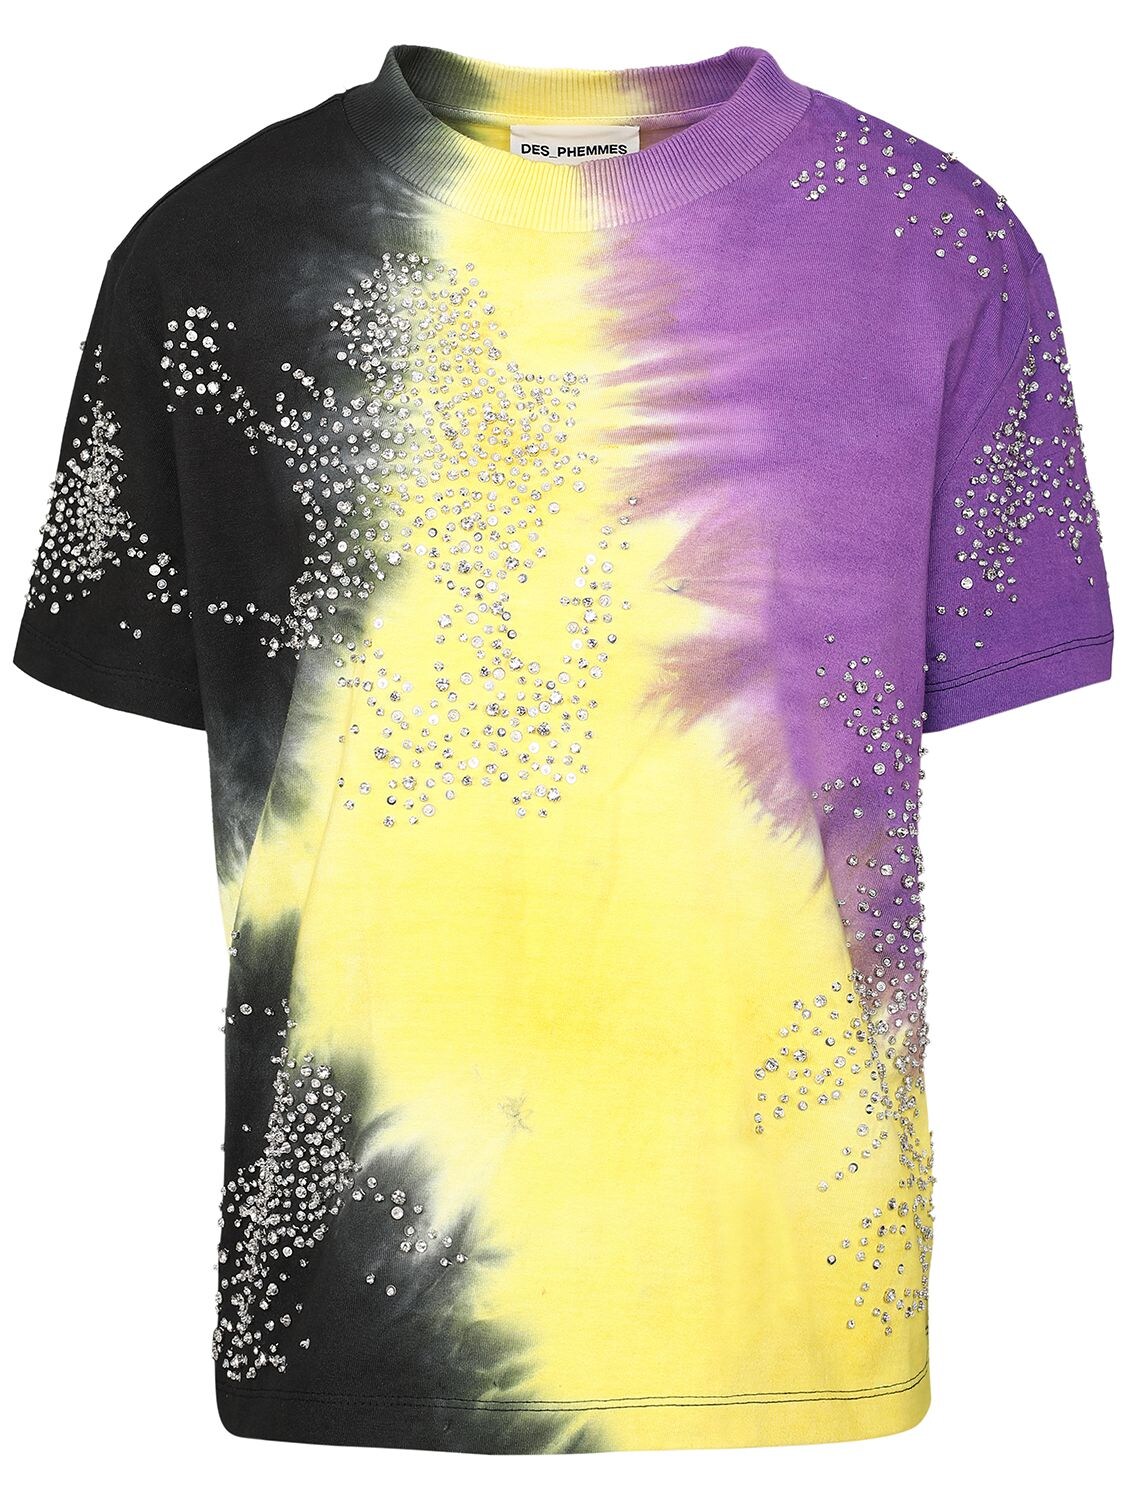 Des Phemmes Tie-Dye Embroidered Denim Shirt